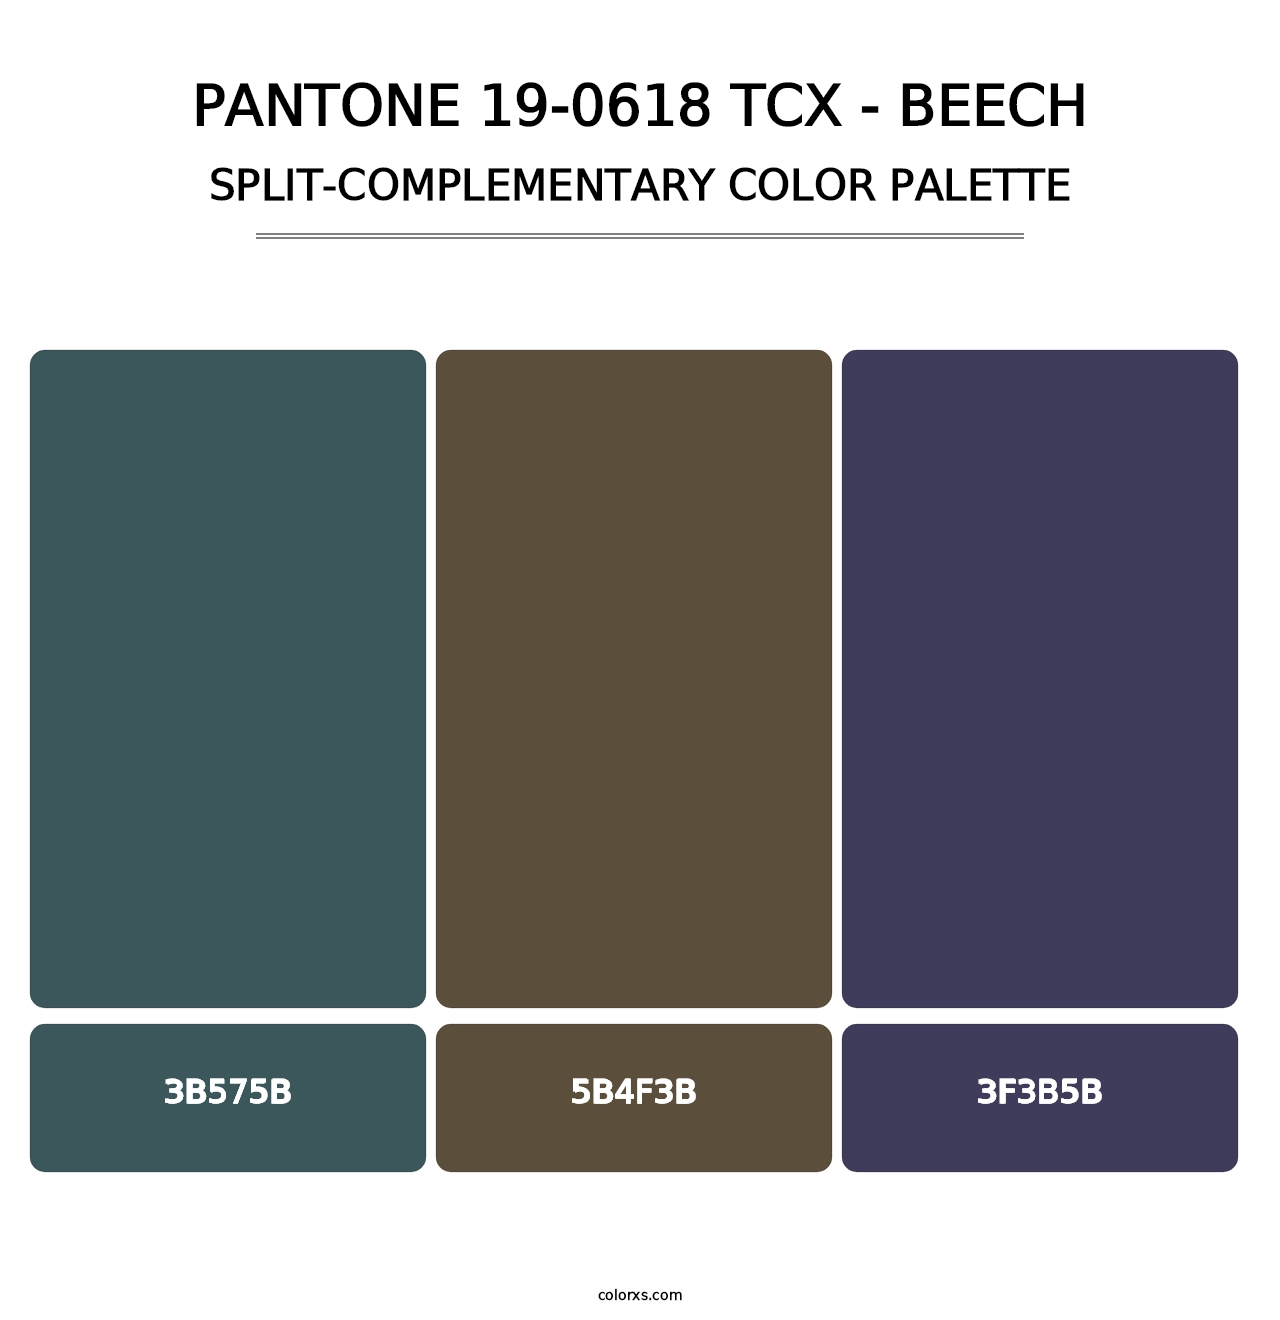 PANTONE 19-0618 TCX - Beech - Split-Complementary Color Palette